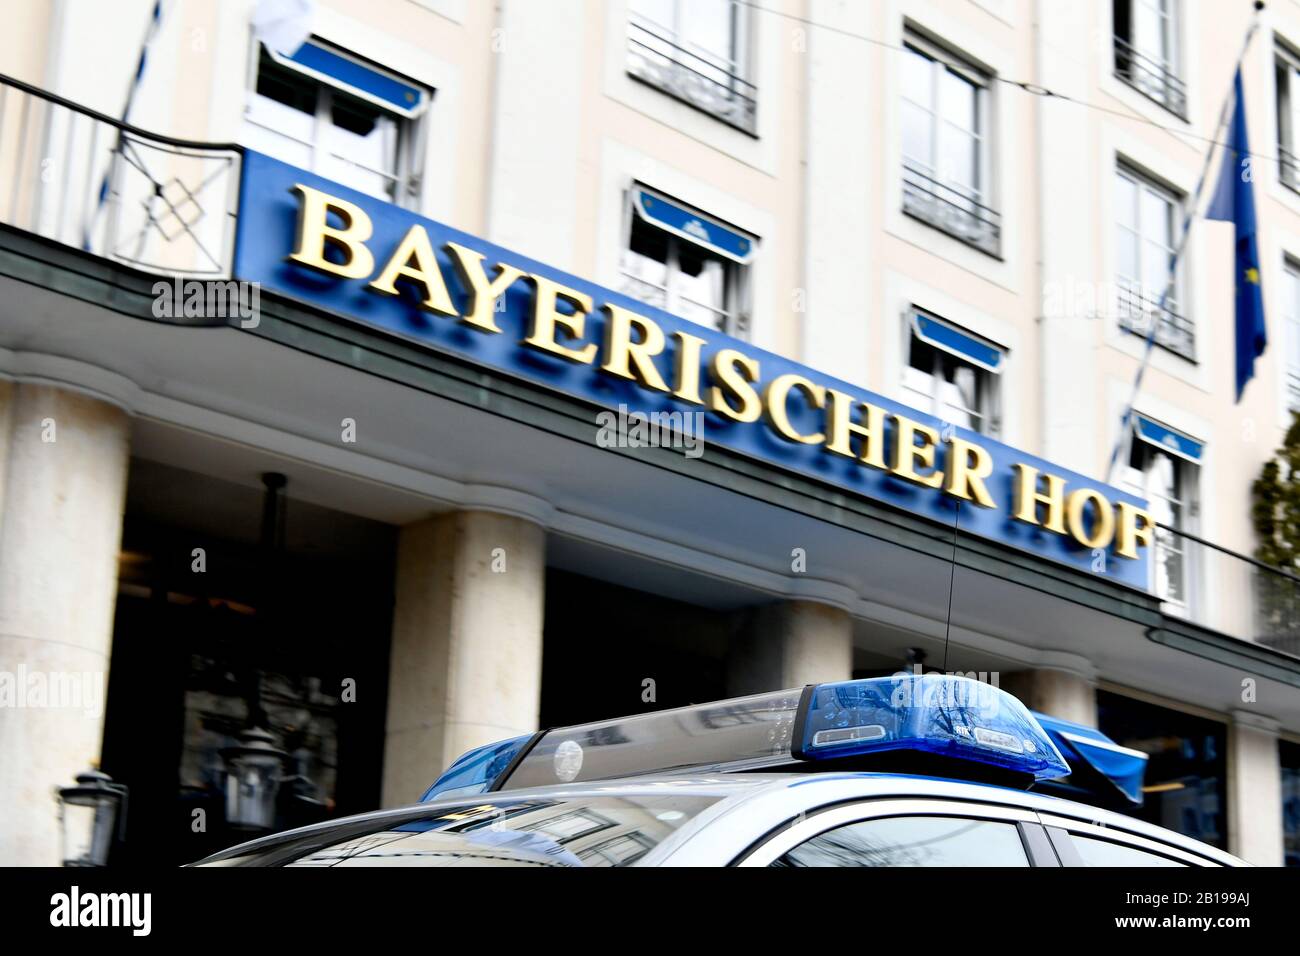 La policía, coche, Azul, flash, intermitente, luz, luces LED, VIP, importante, proteger, guardar, Hotel Bayerischer Hof, Munich, la construcción, la casa, la entrada delantera, Foto de stock